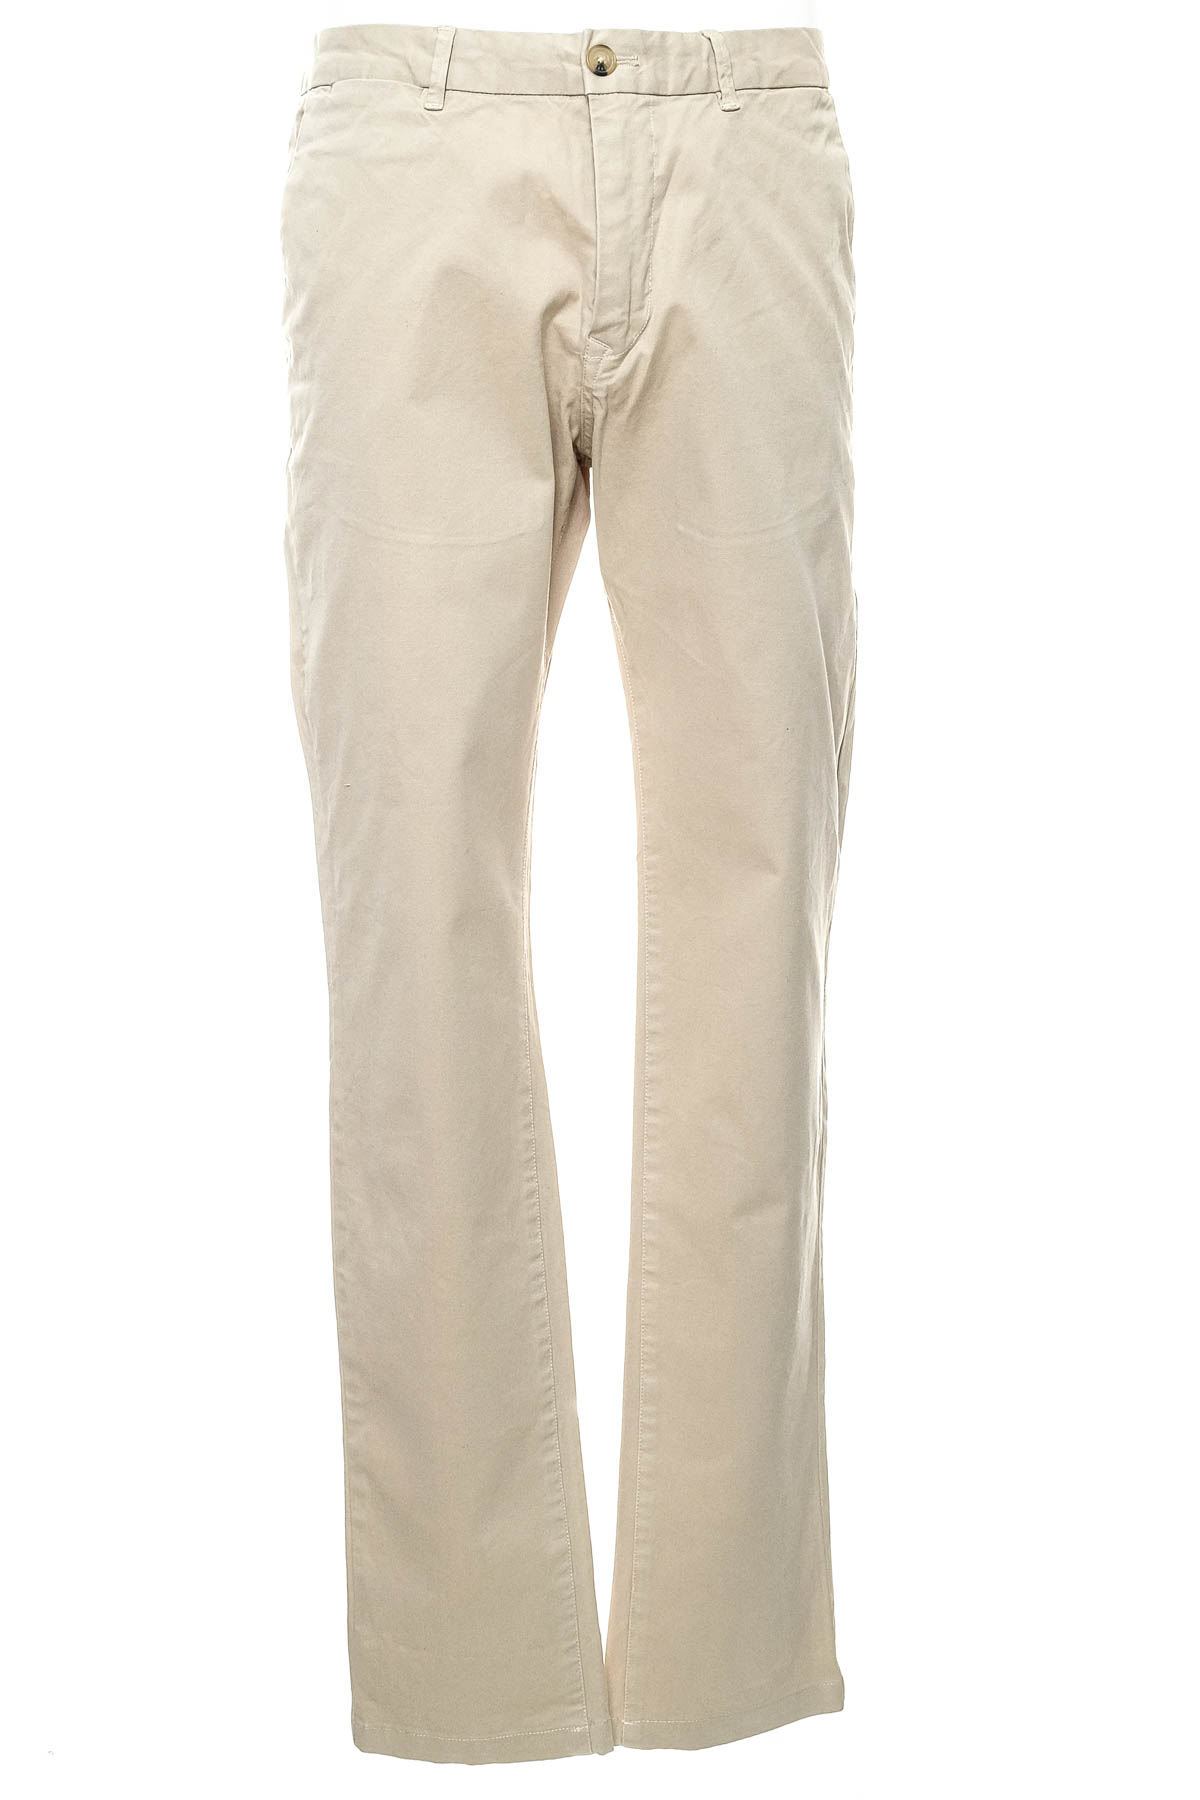 Pantalon pentru bărbați - SCOTCH & SODA - 0